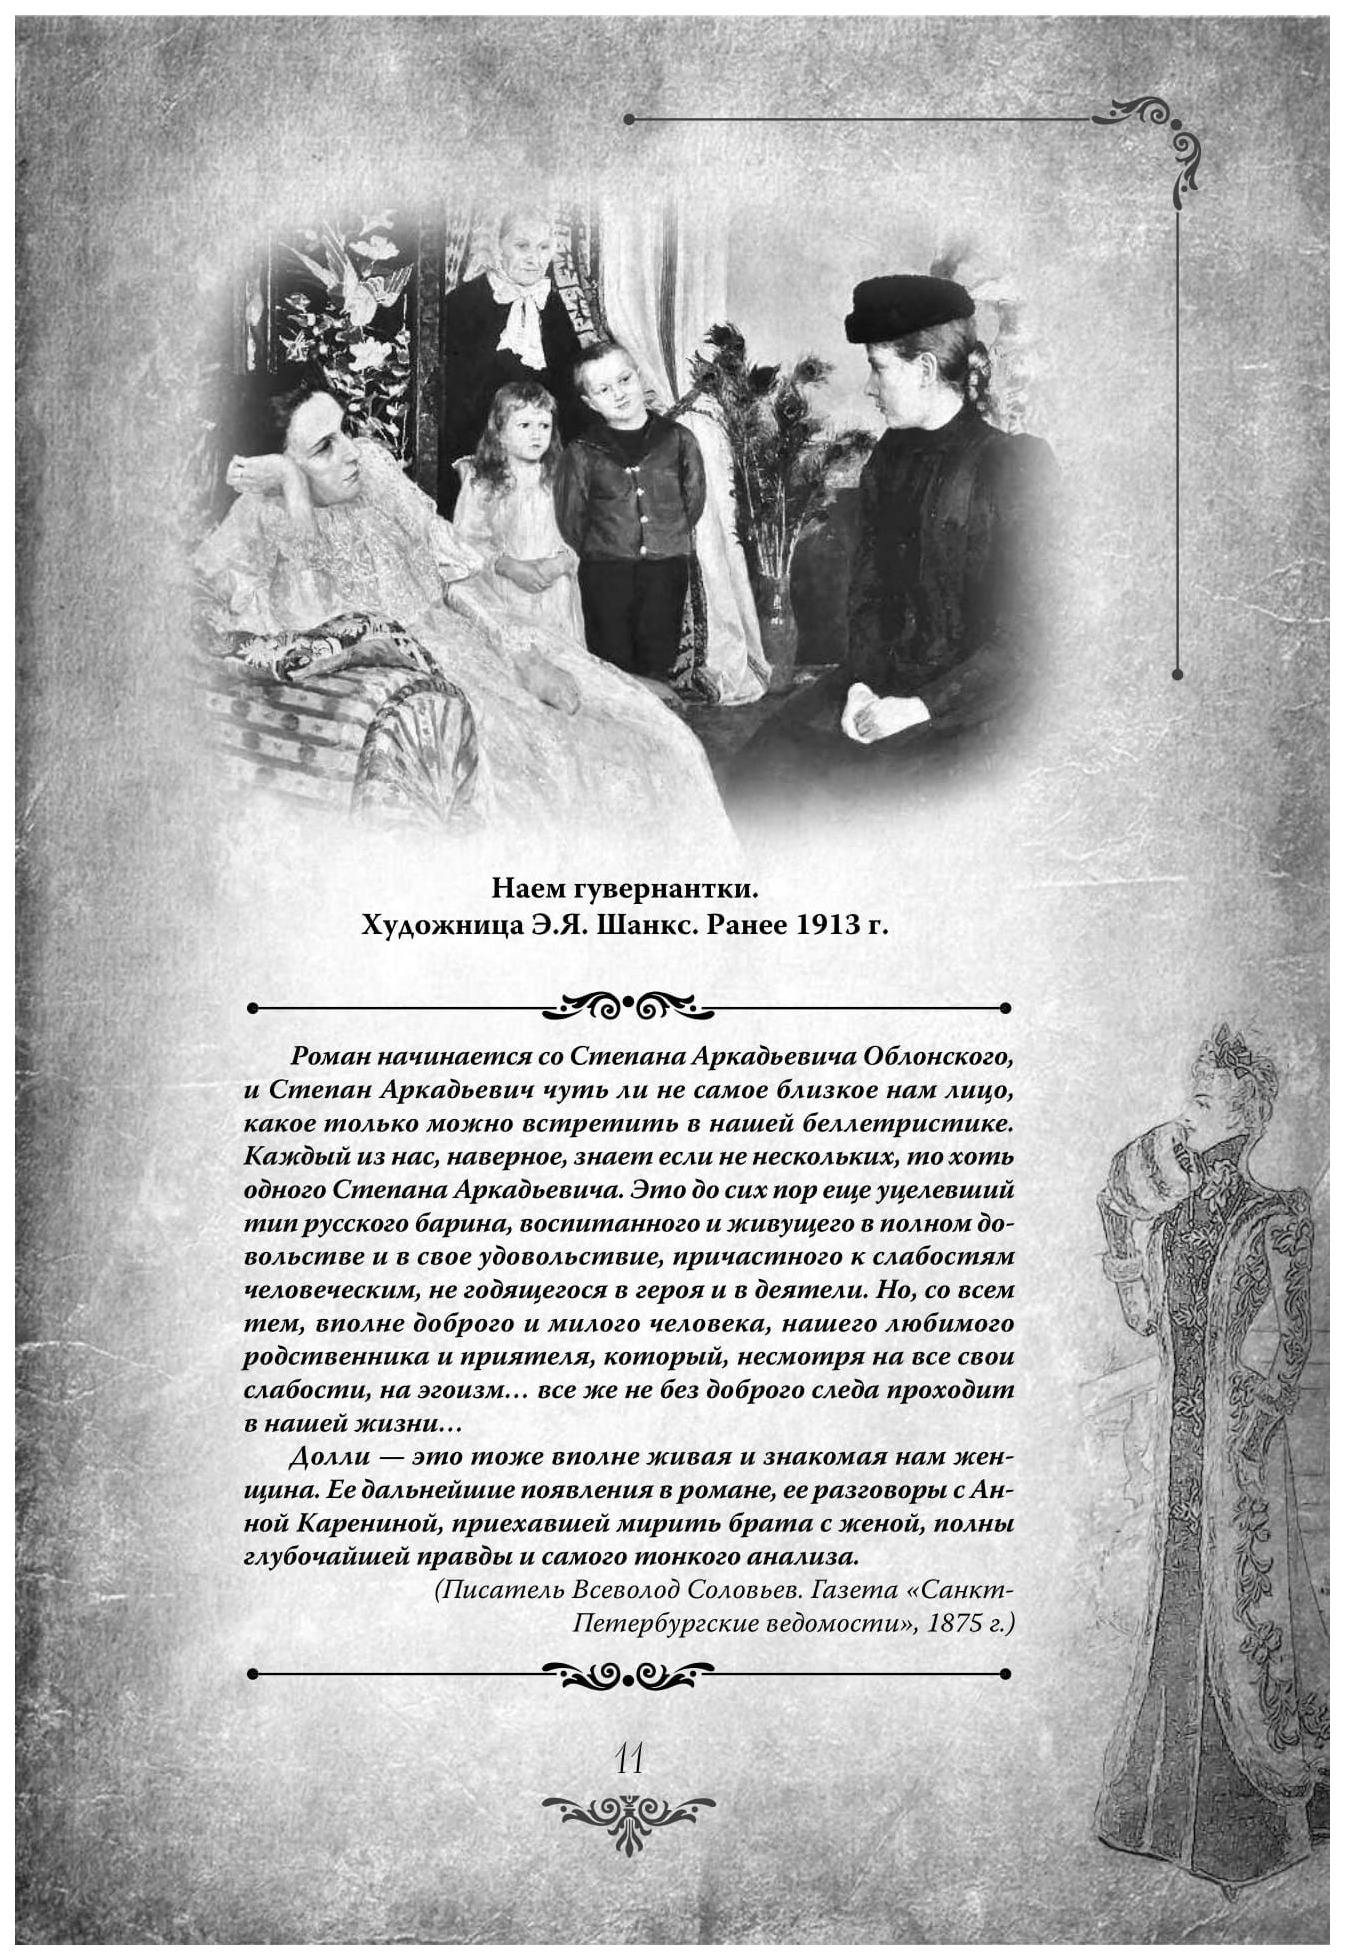 Книга Анна каренина. коллекционное Иллюстрированное Издание